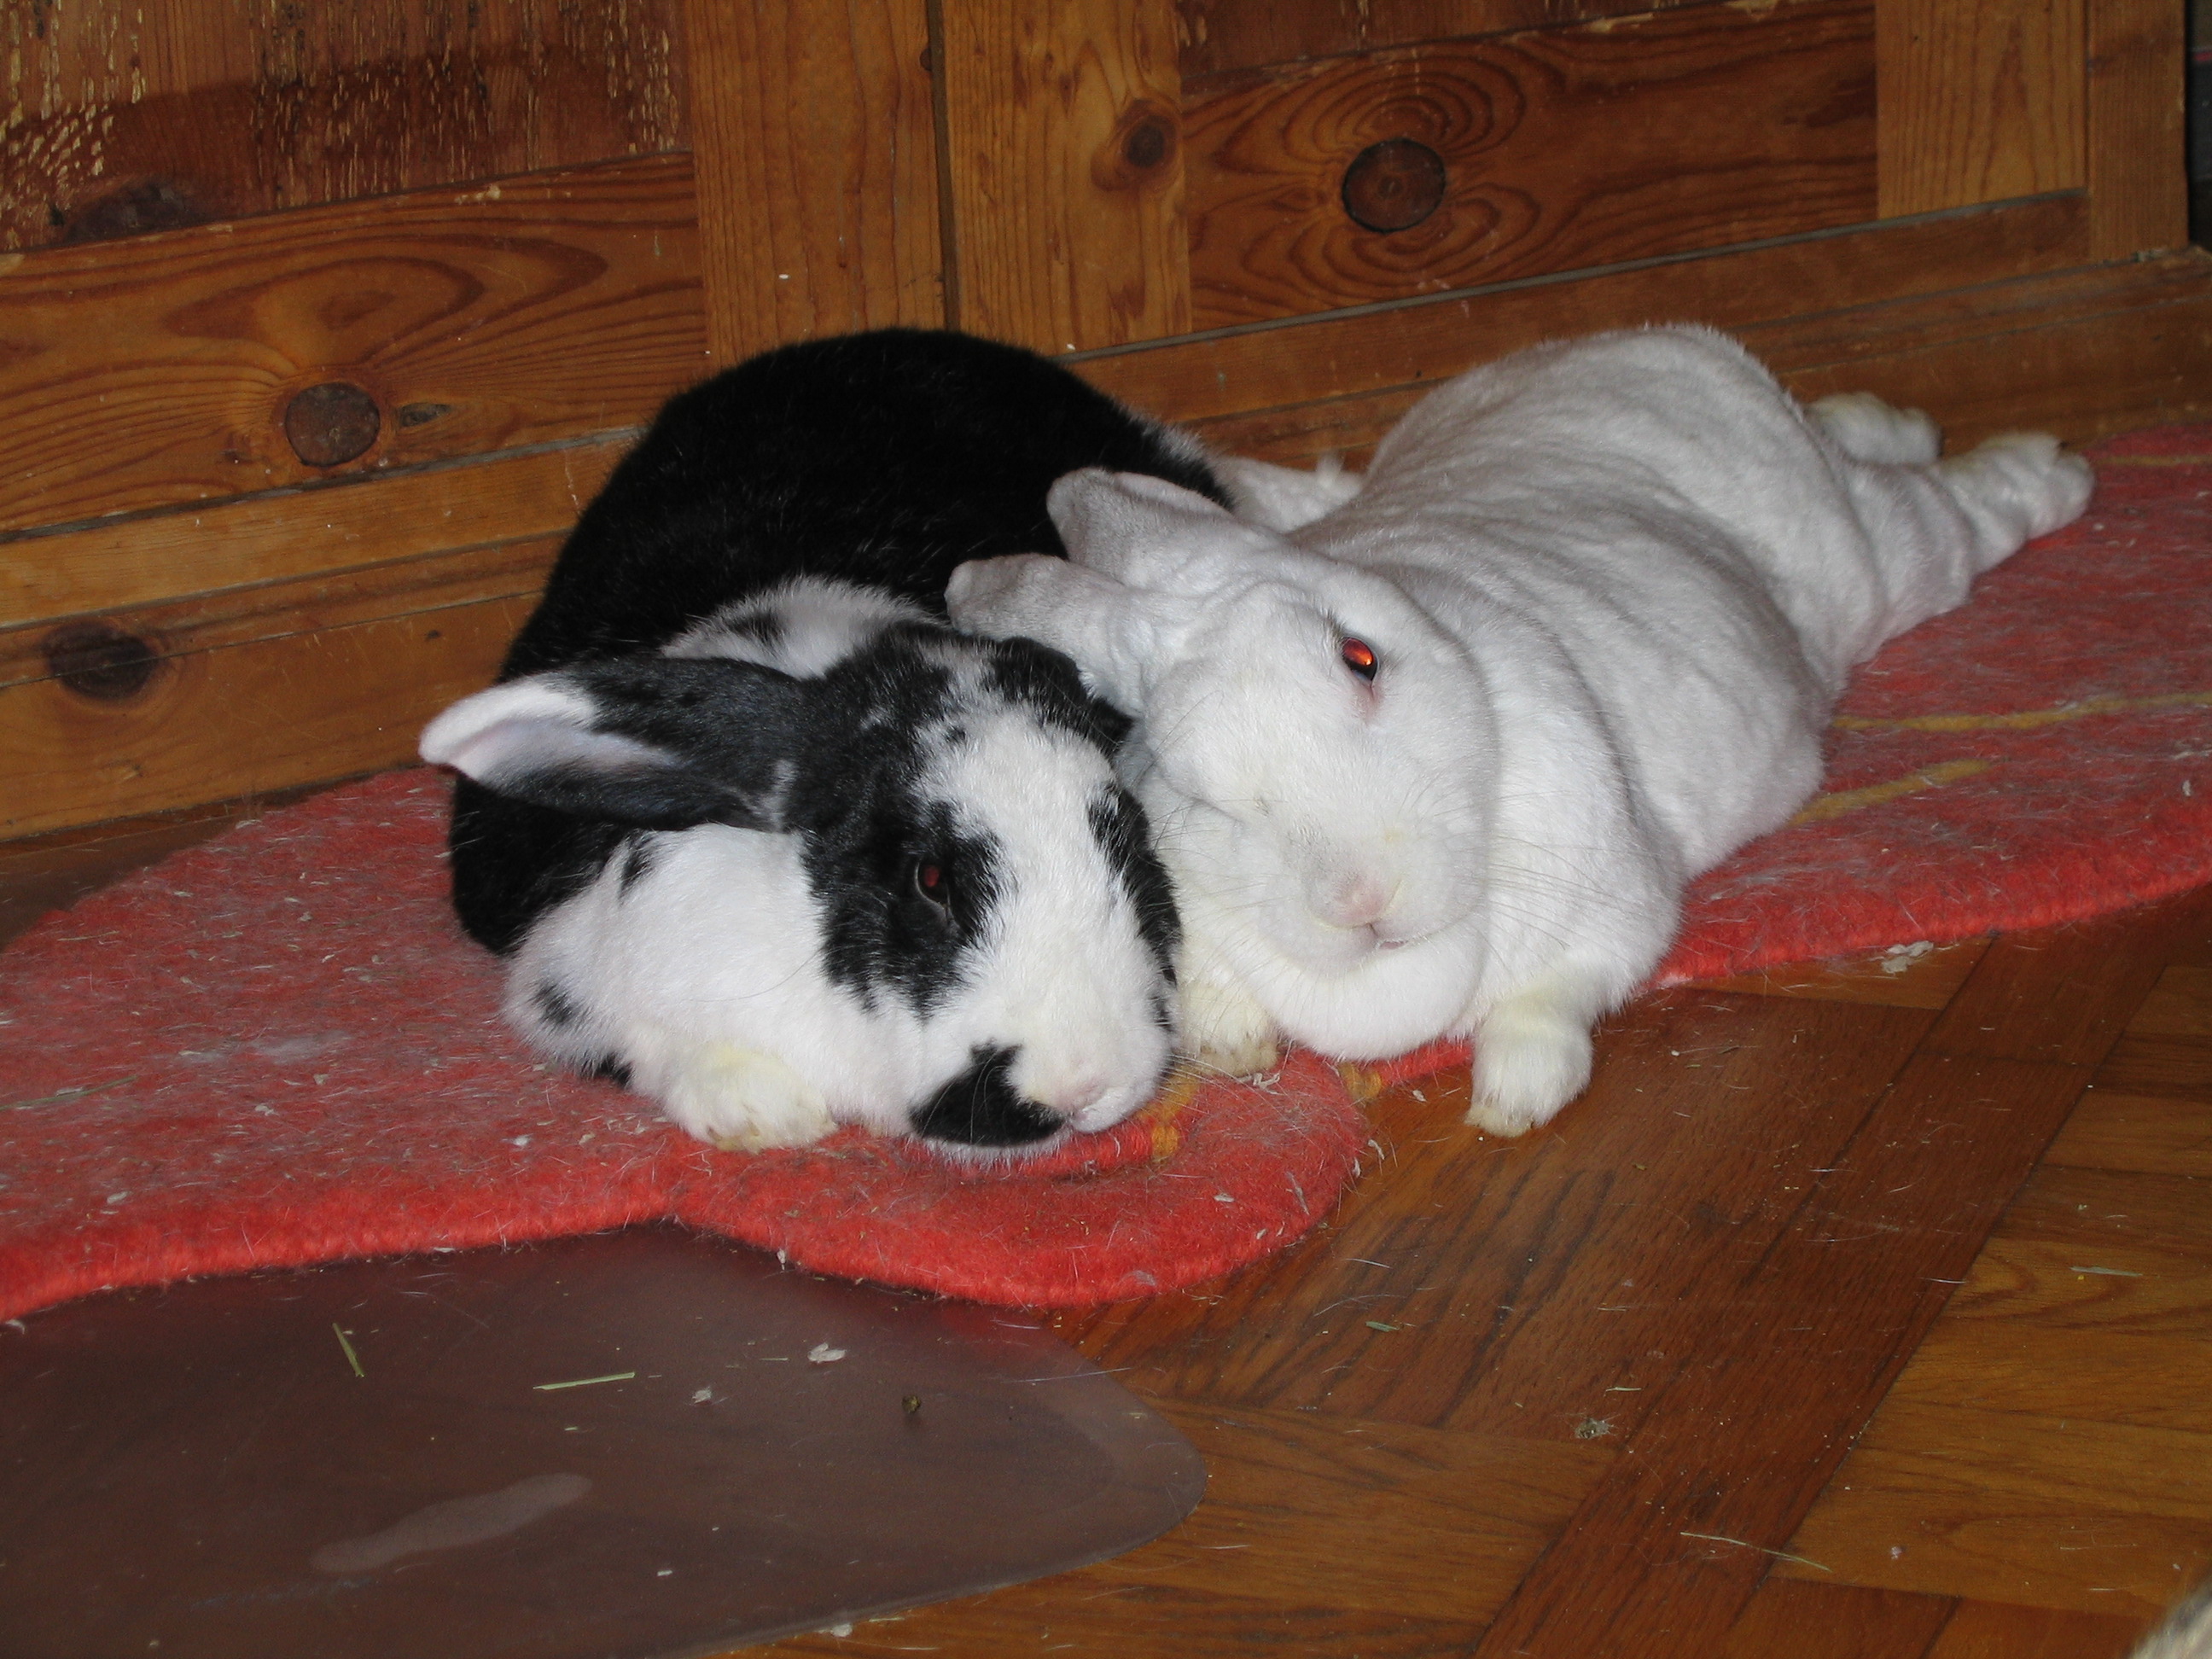 bonding female rabbits